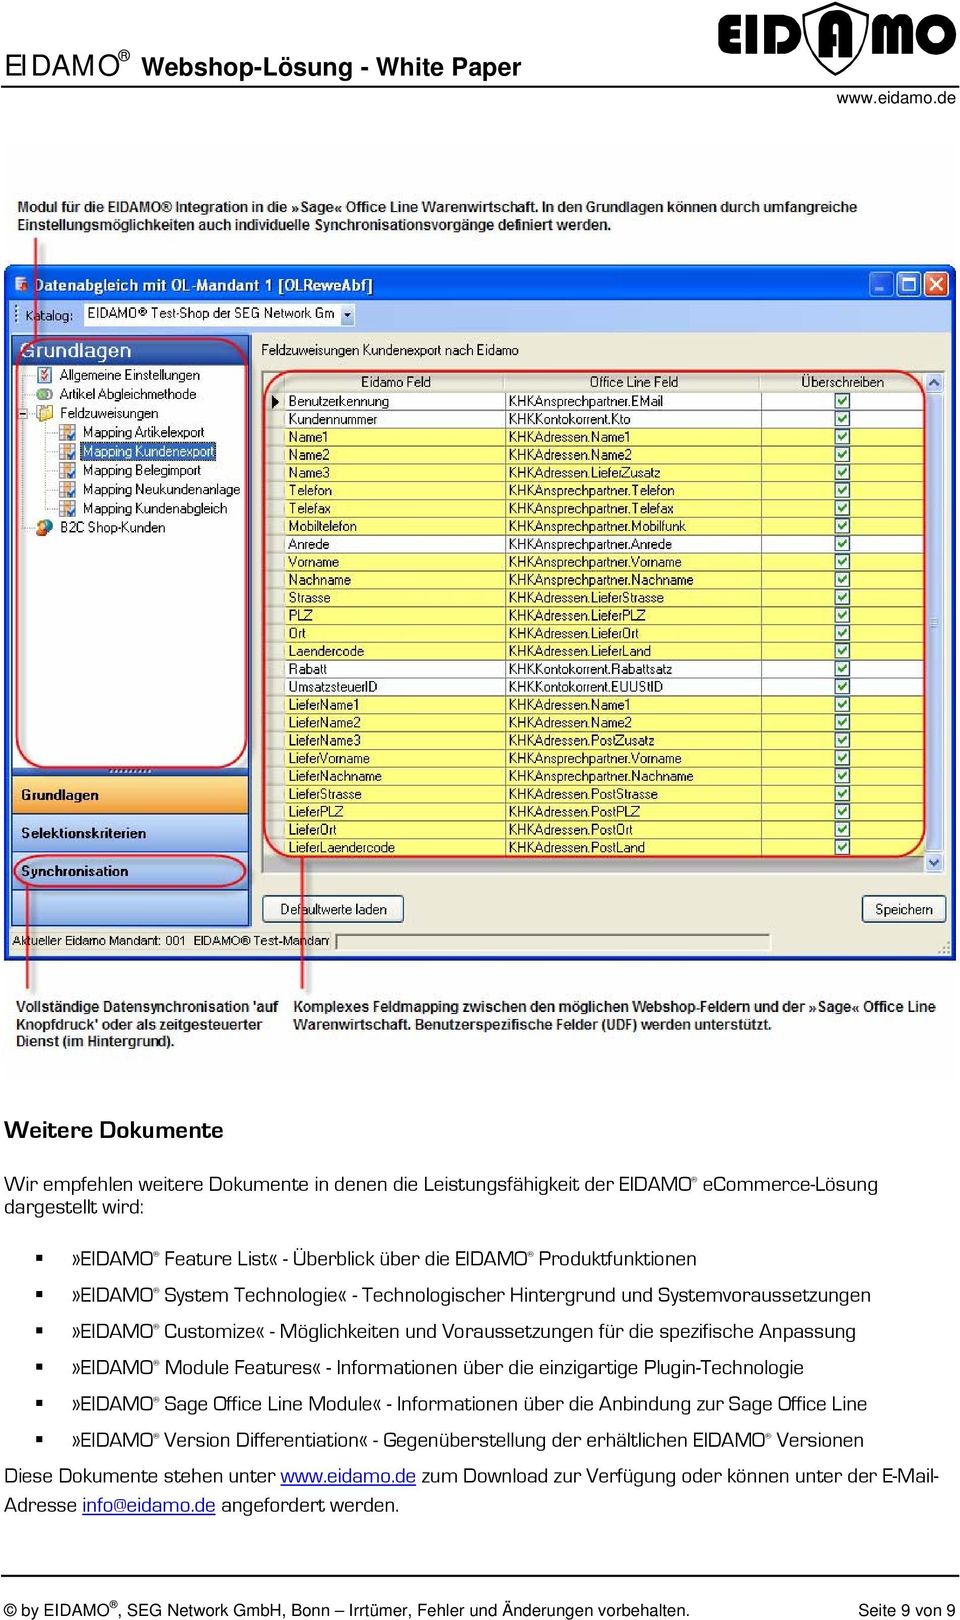 Features«- Informationen über die einzigartige Plugin-Technologie»EIDAMO Sage Office Line Module«- Informationen über die Anbindung zur Sage Office Line»EIDAMO Version Differentiation«-